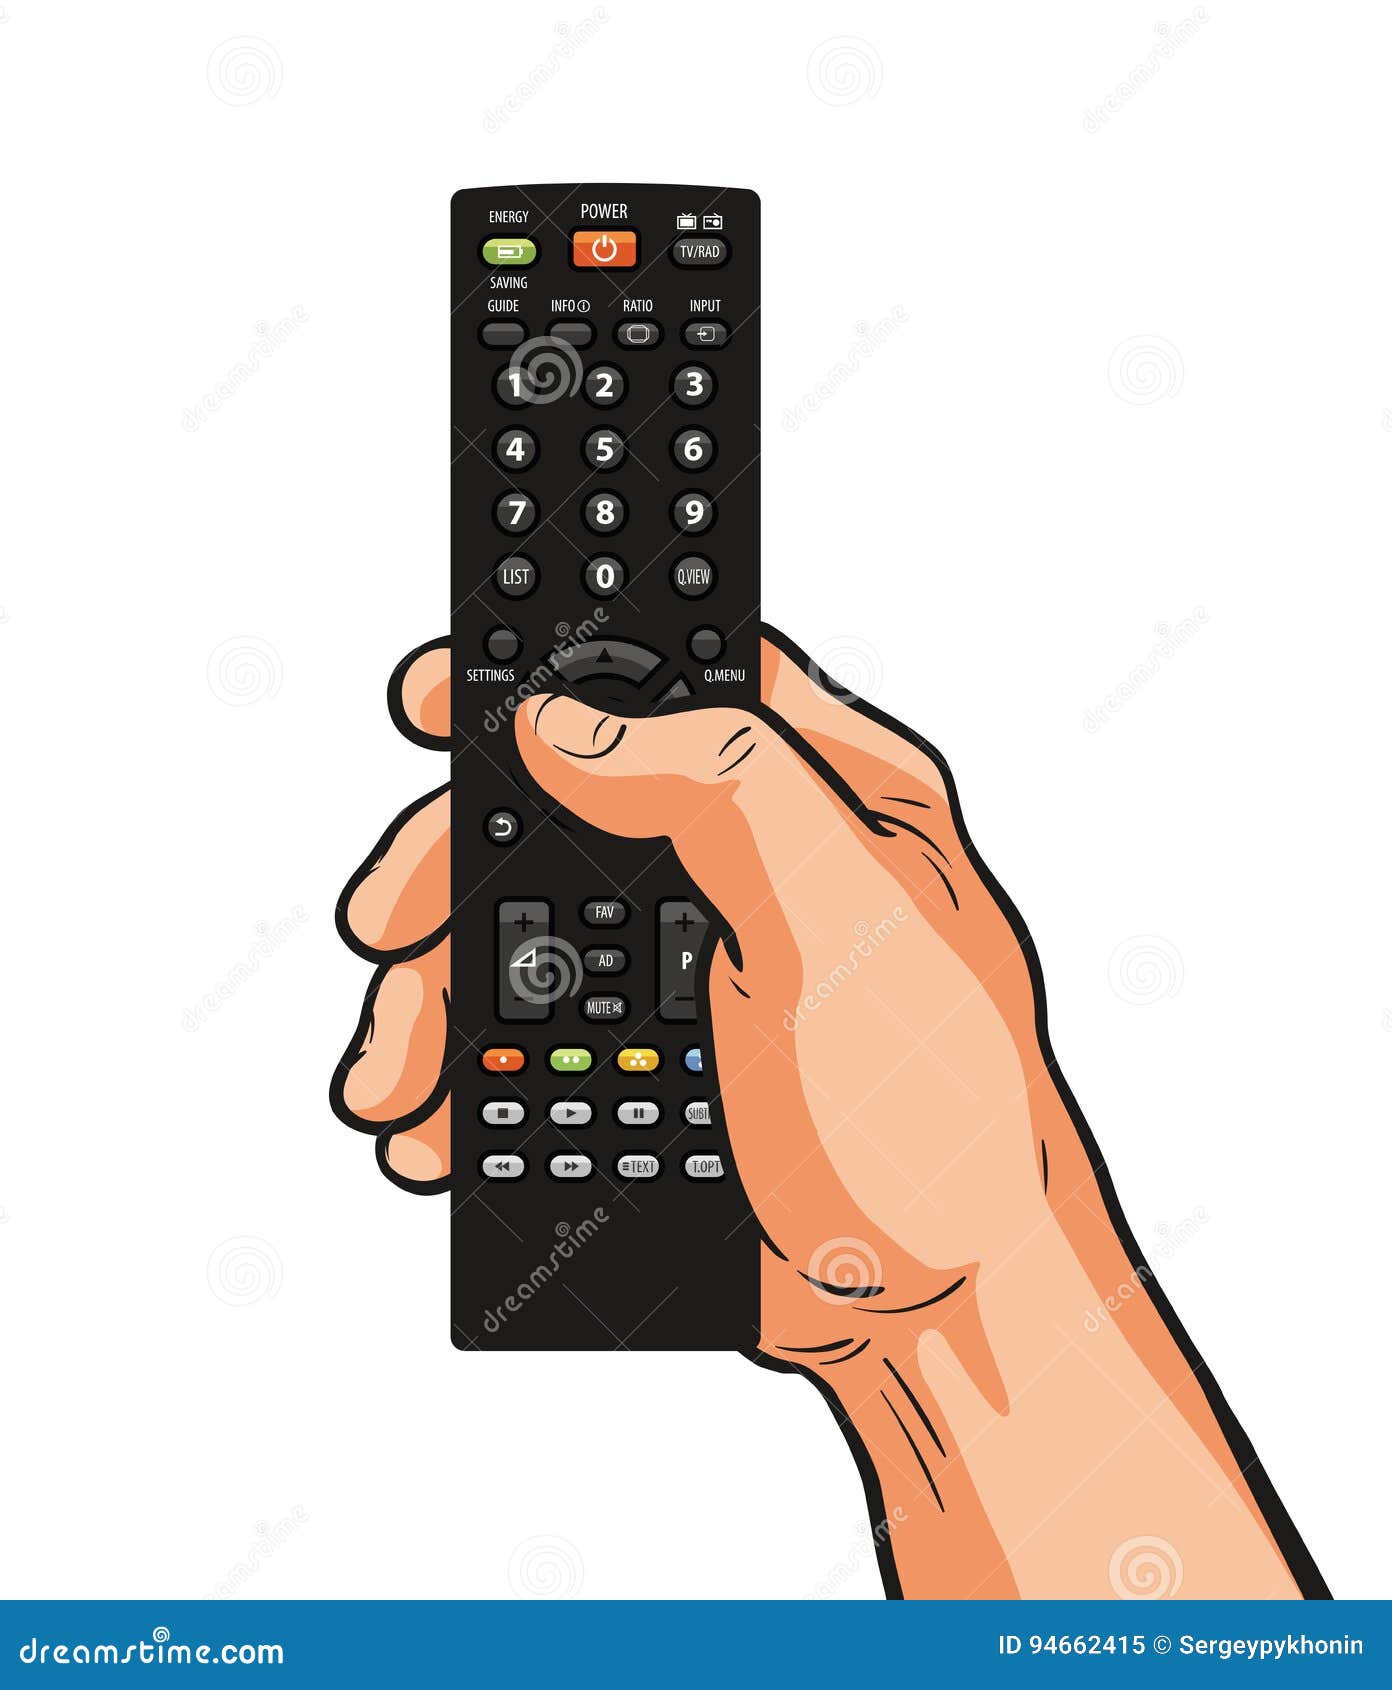 tv remote clipart